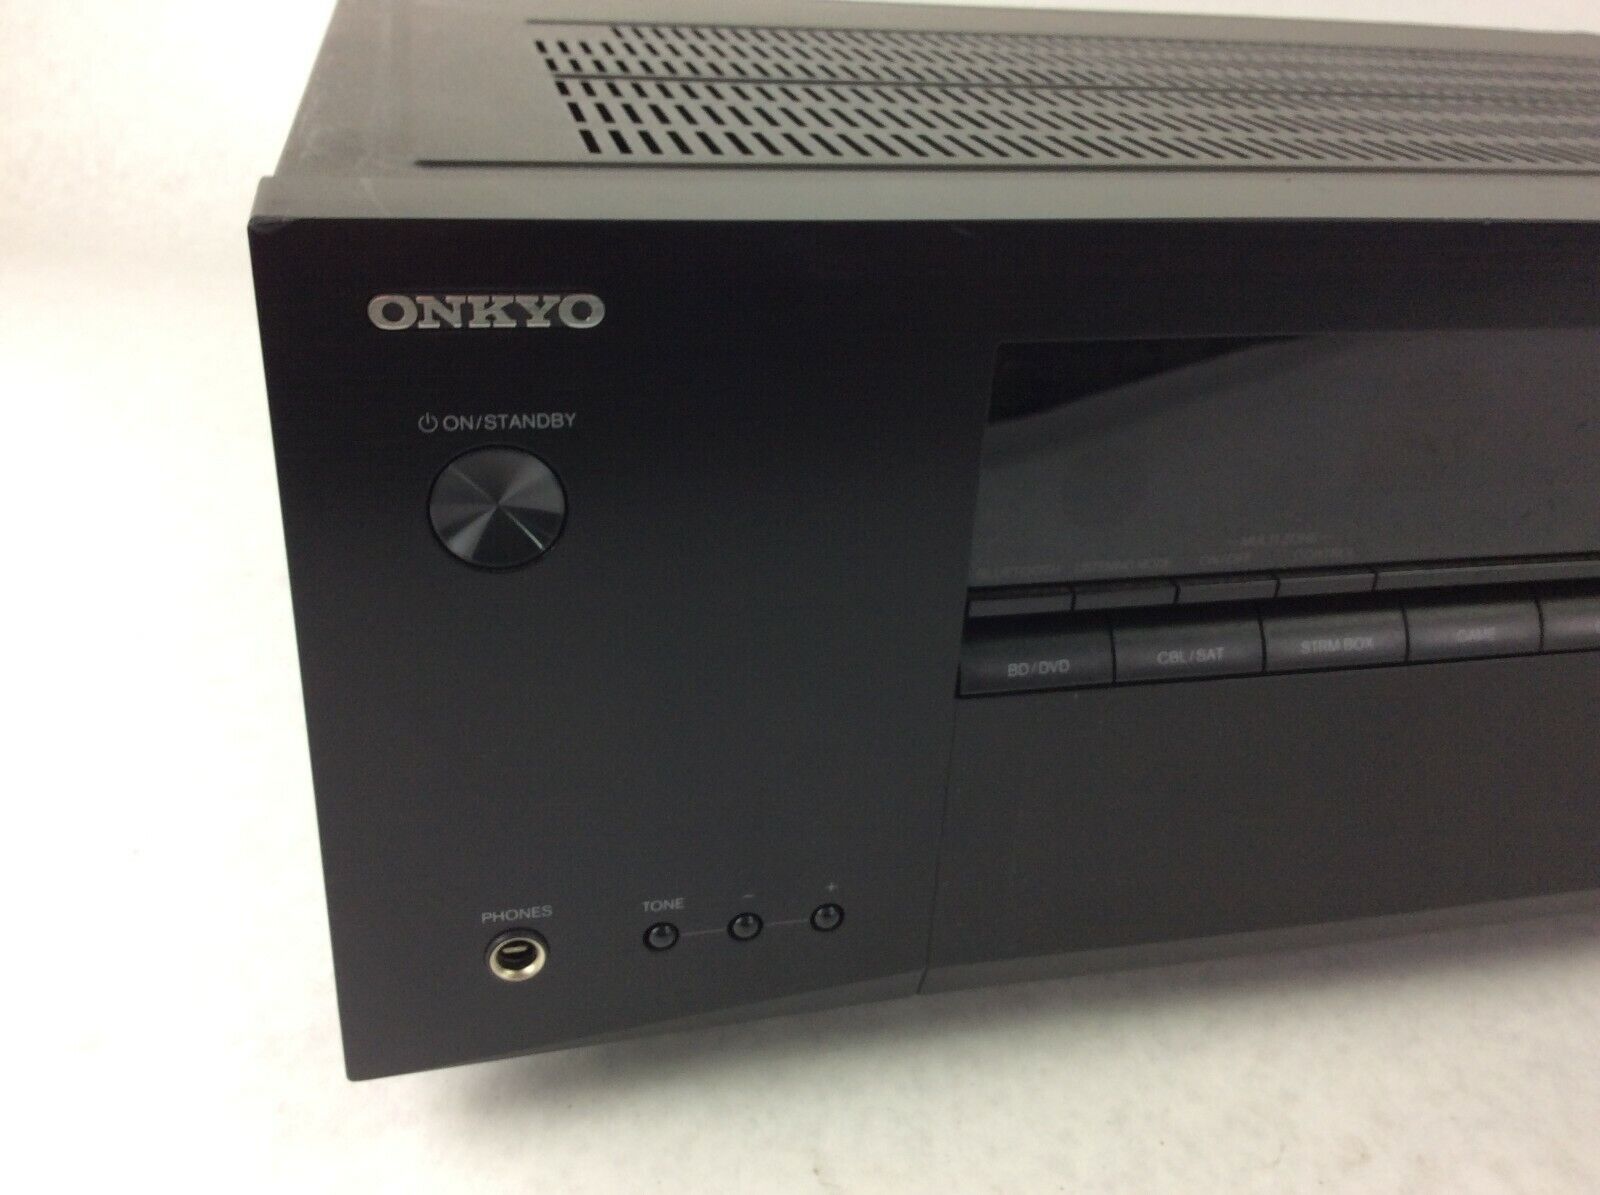 Onkyo TX-SR383 AV Surround Sound Receiver - Parts or Repair